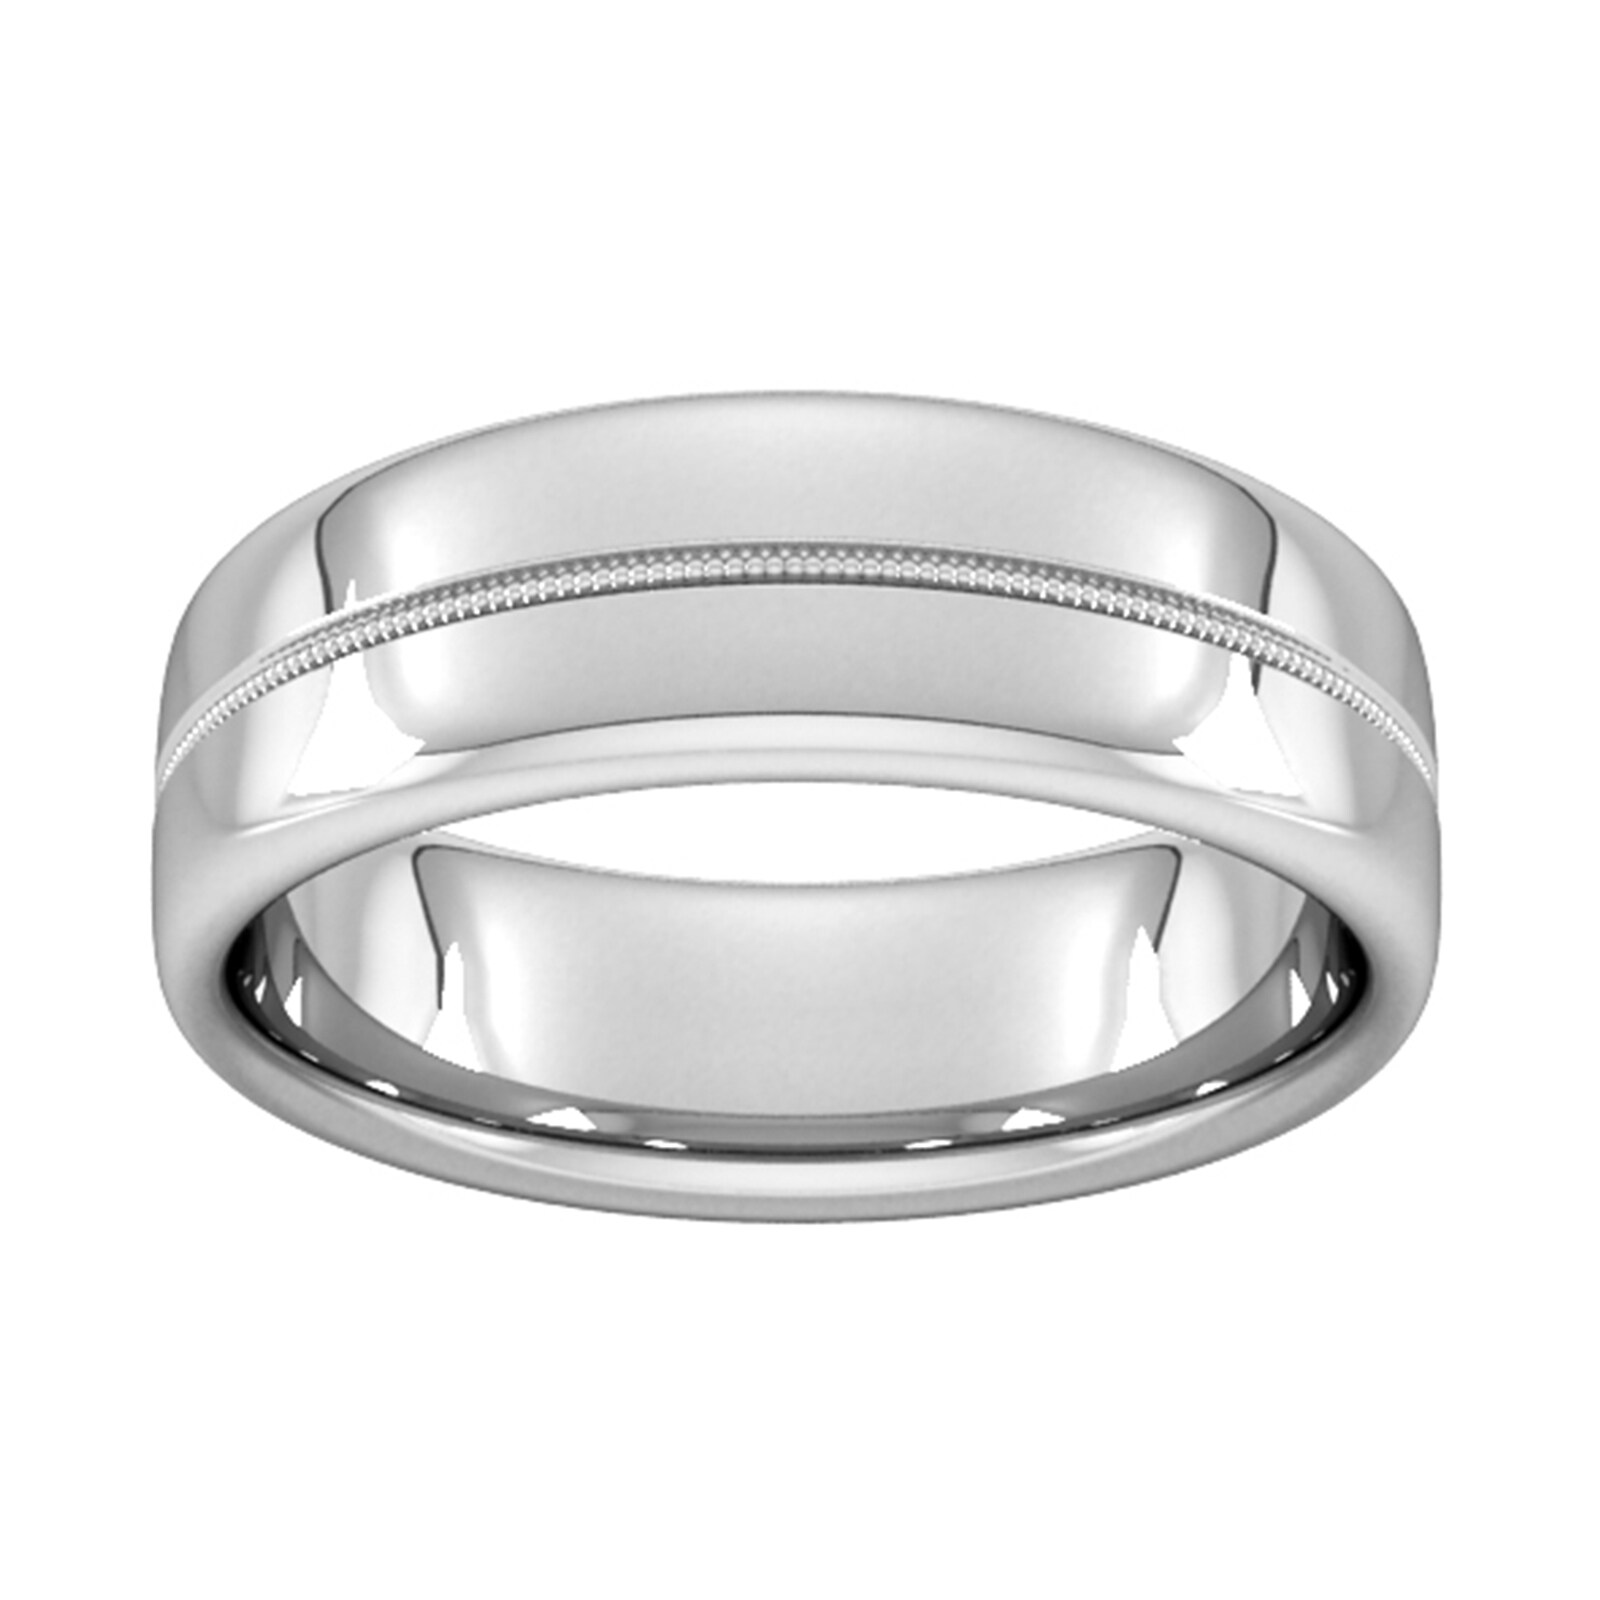 7mm Slight Court Heavy Milgrain Centre Wedding Ring In 9 Carat White Gold - Ring Size O